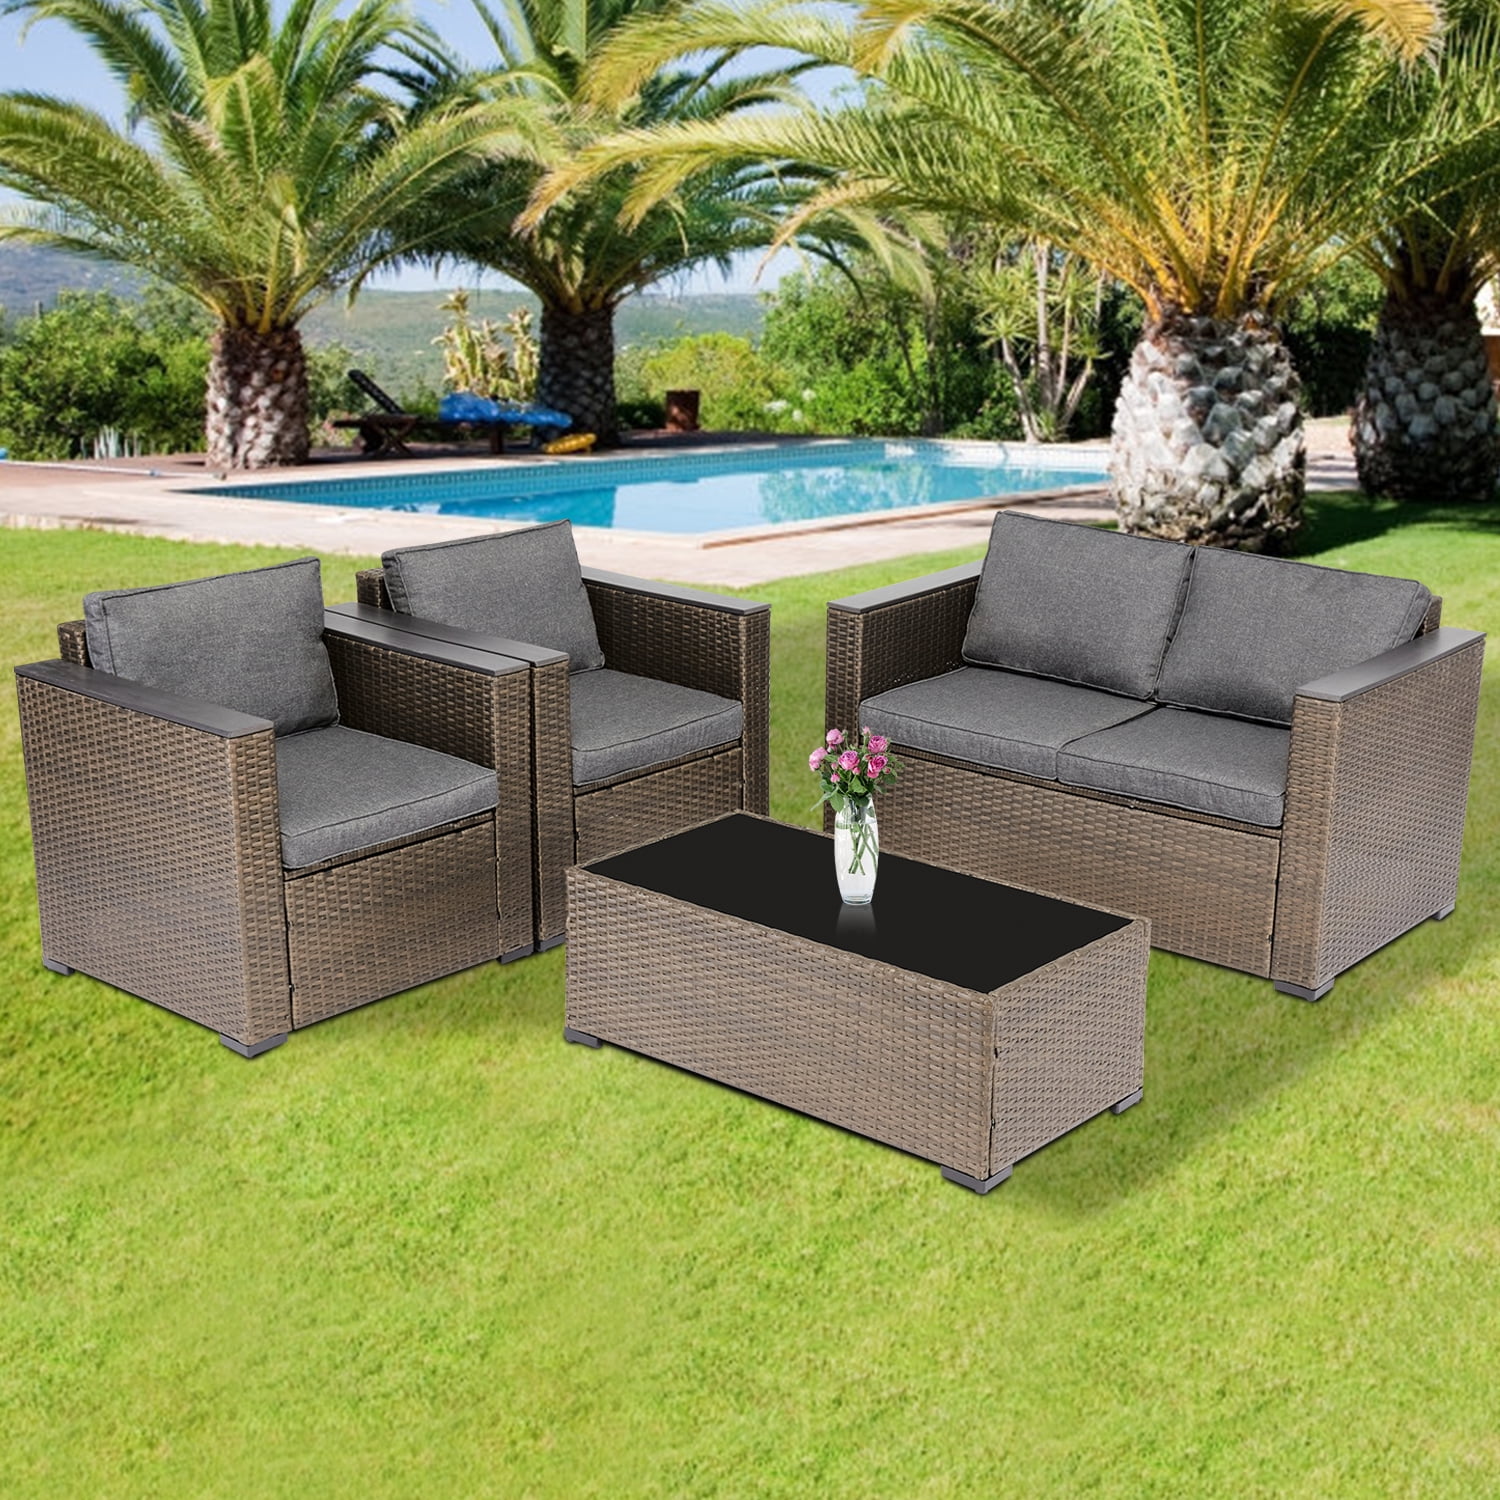 Kinbor 4 PCs Rattan Patio Outdoor Furniture Set Garden Lawn Sofa Sectional Set Black 